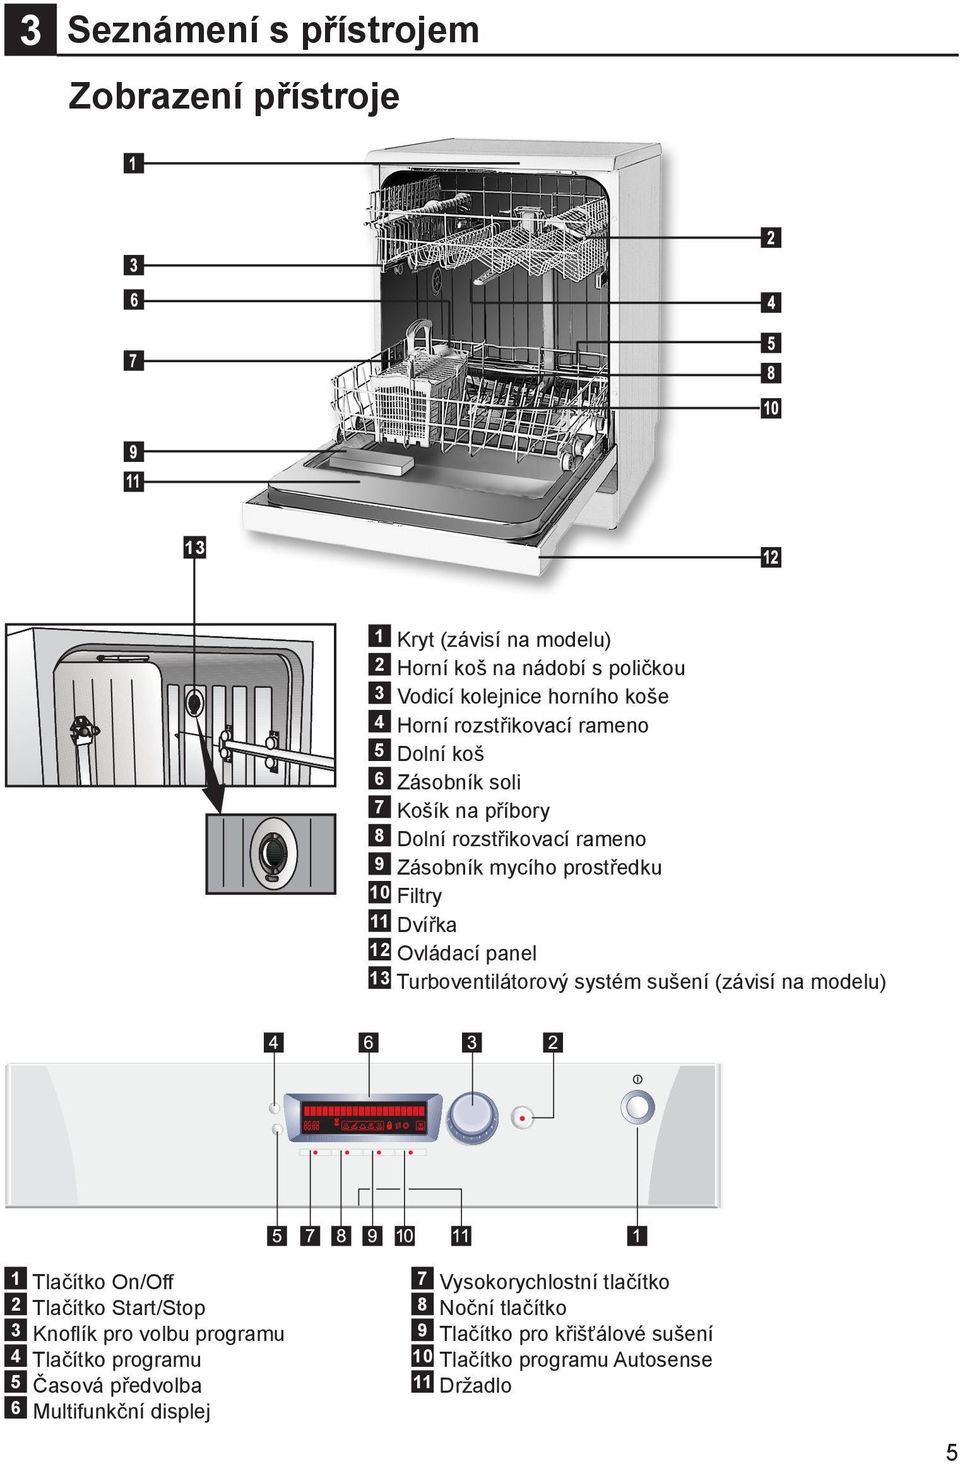 Ovládací panel 13 Turboventilátorový systém sušení (závisí na modelu) 1 Tlačítko On/Off 2 Tlačítko Start/Stop 3 Knoflík pro volbu programu 4 Tlačítko